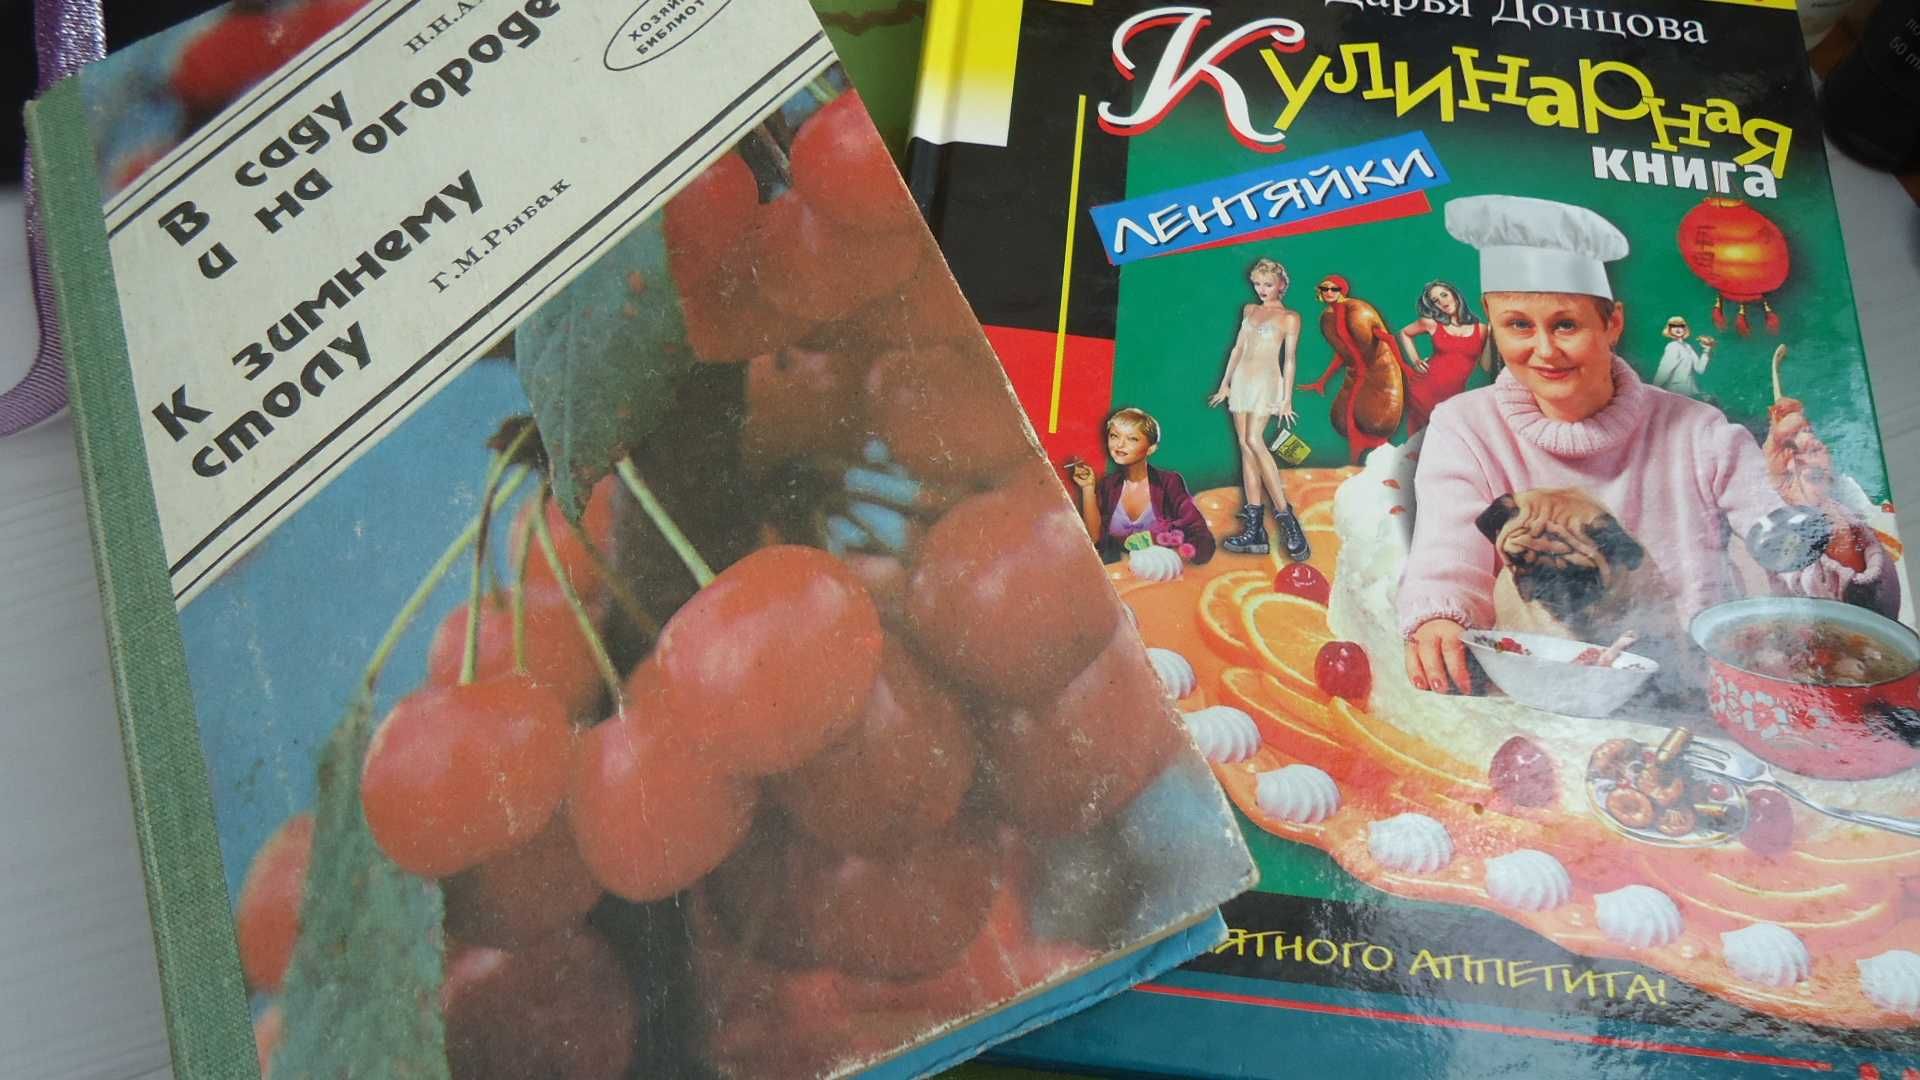 Книга "Кулинария" 1961 г и другие книги рецептов